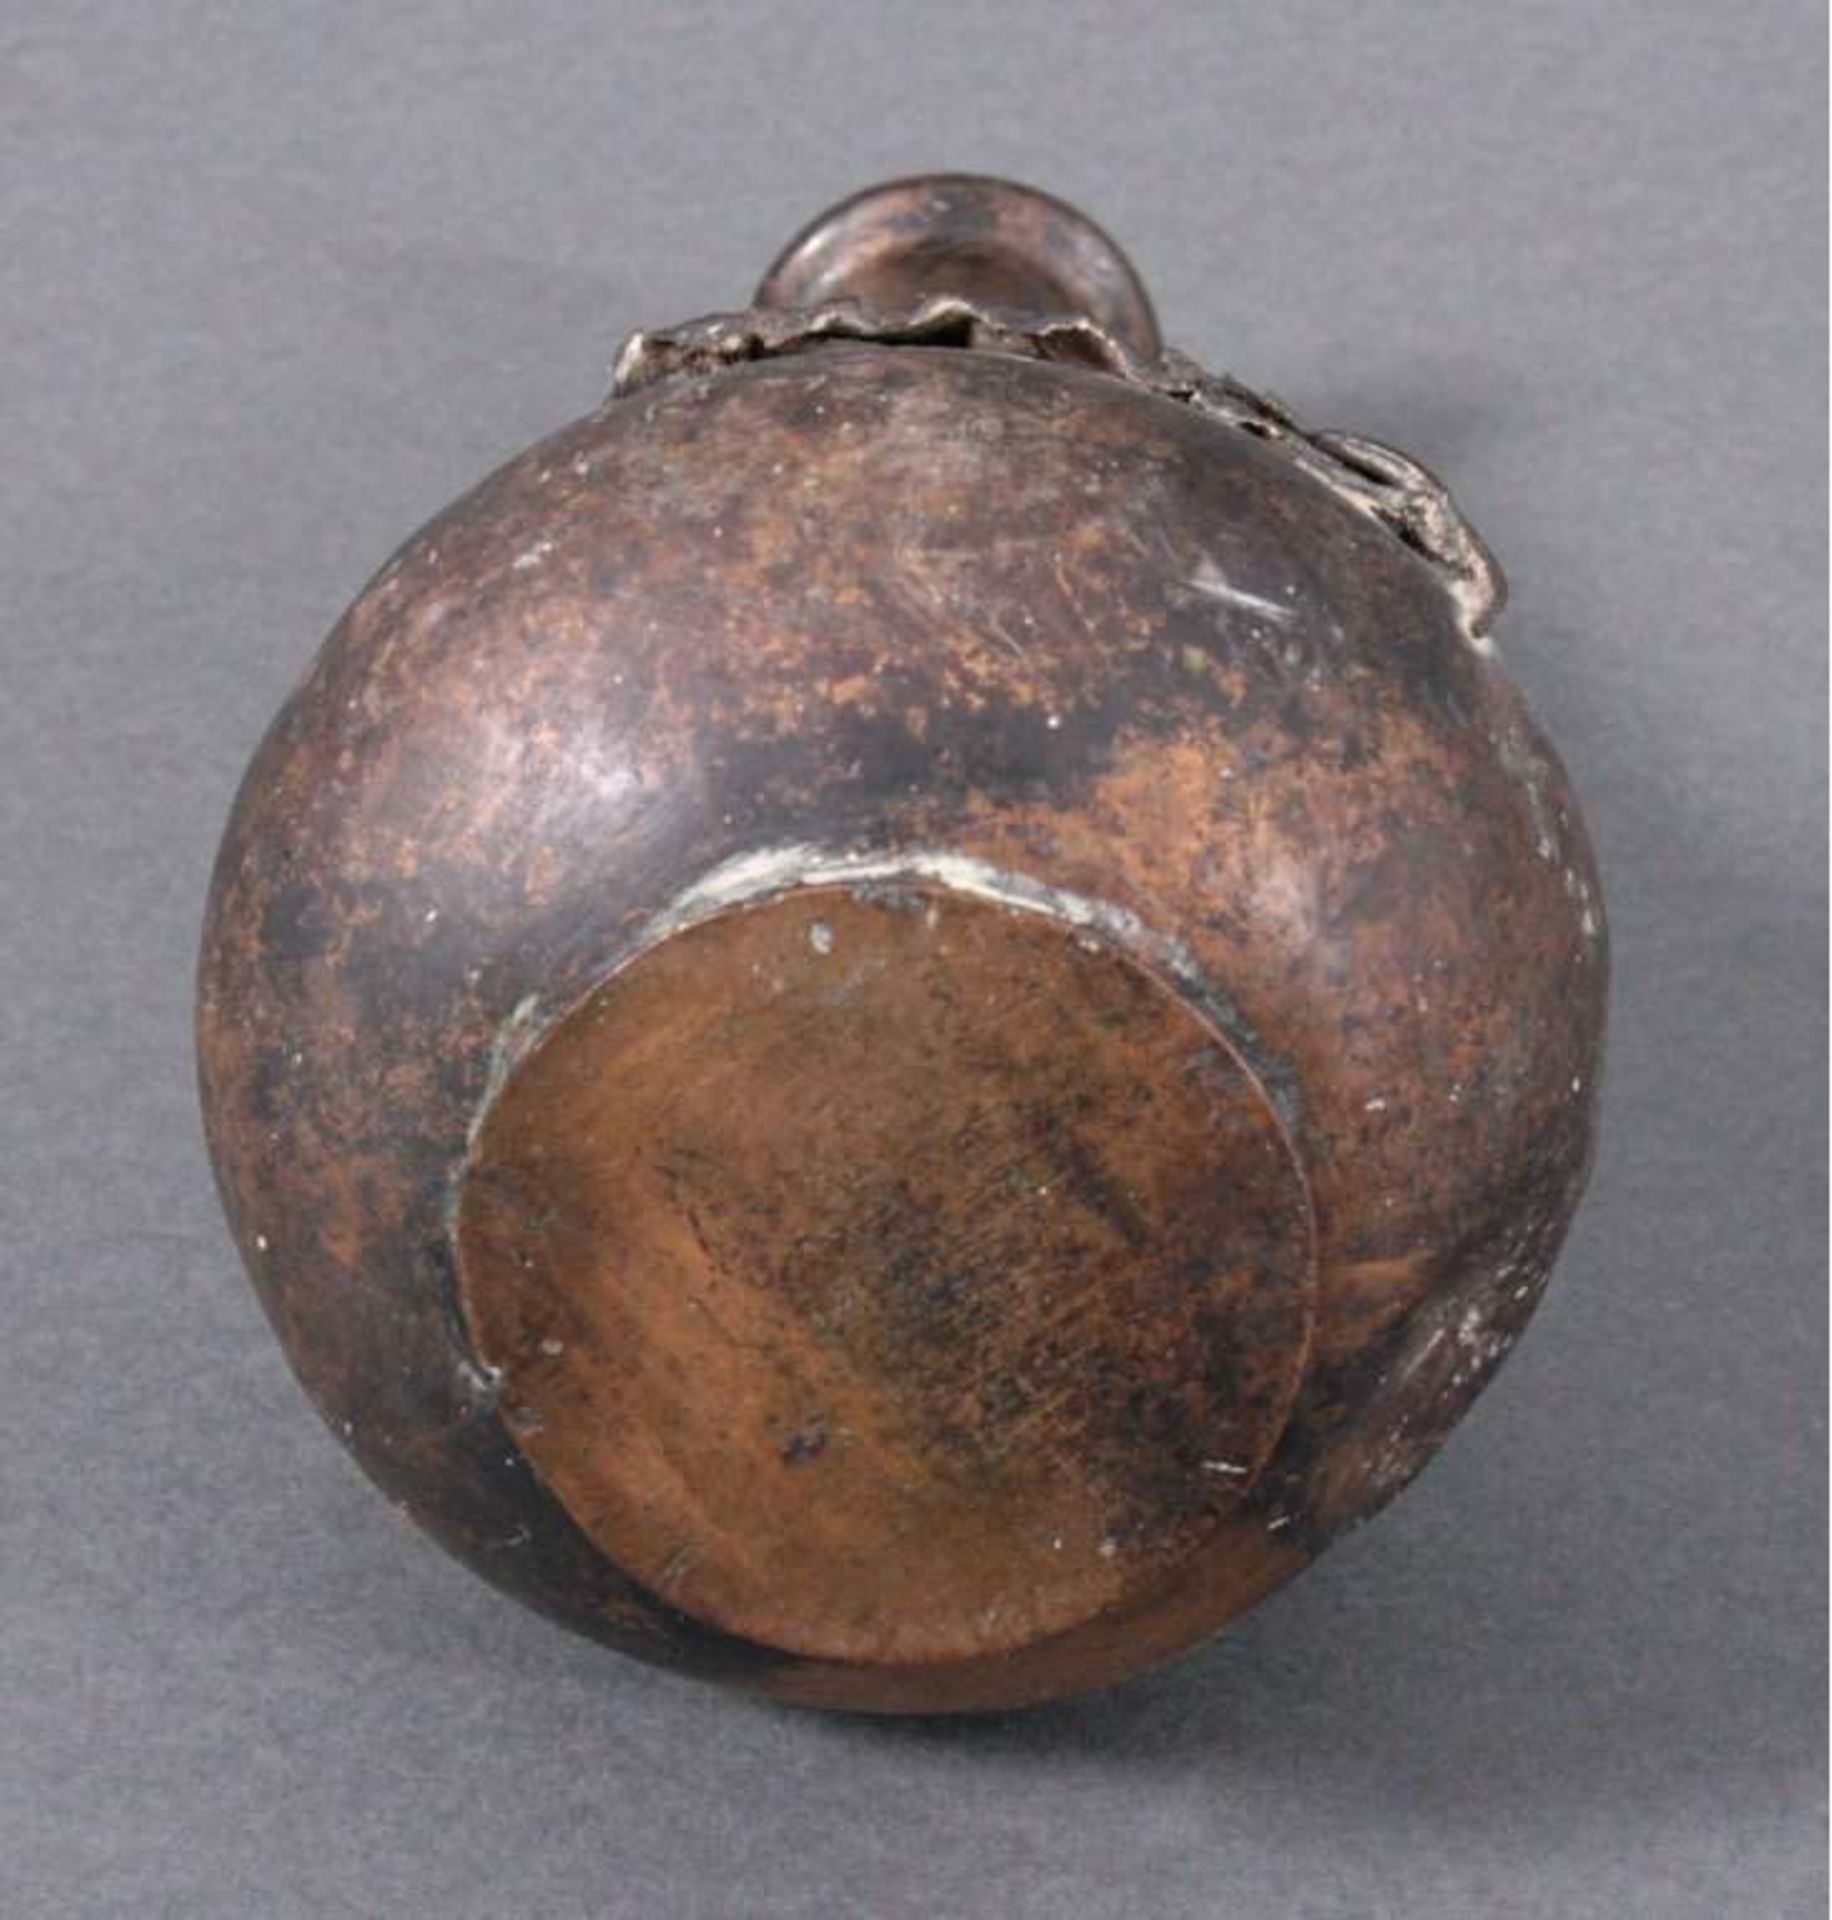 Bronze-Vase, ChinaGebauchte Form mit langem Hals und verzierter Wandung vonrelifierten Blättern - Bild 2 aus 2